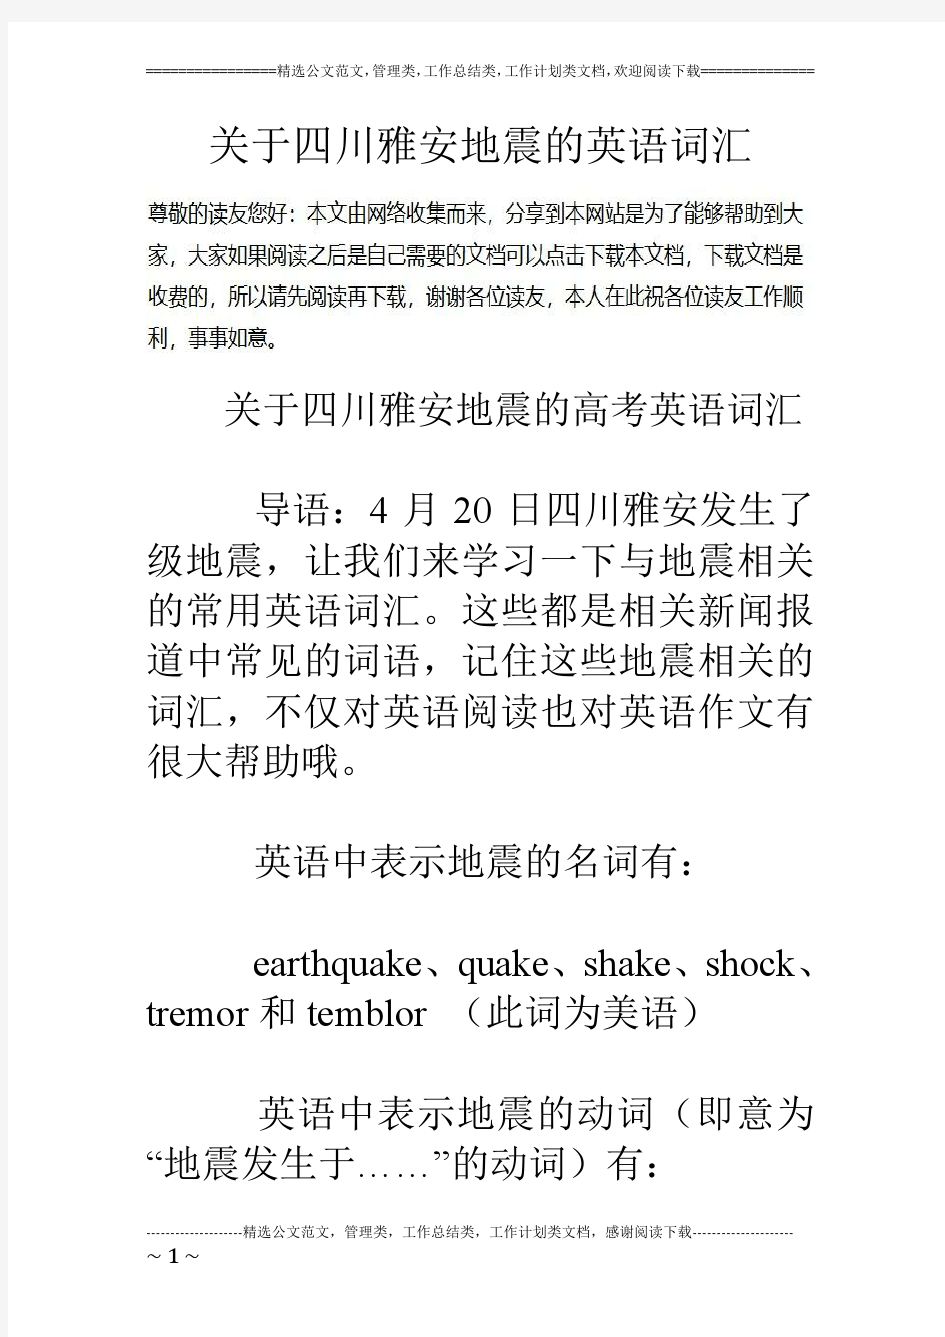 关于四川雅安地震的英语词汇